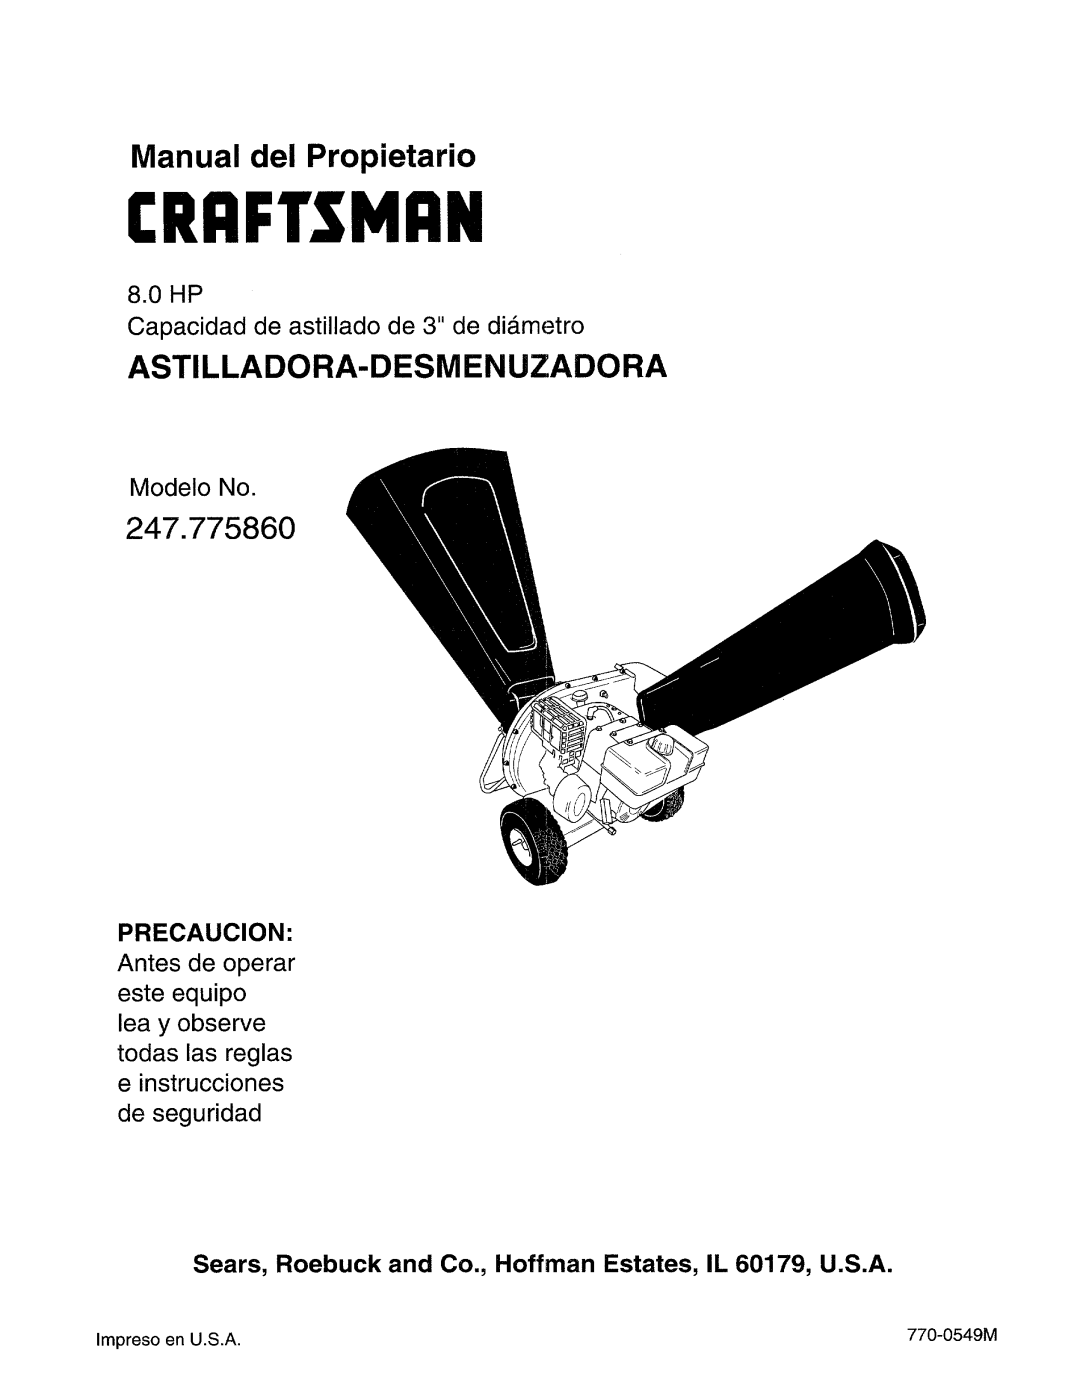 Craftsman Crrftsmrn, Astilladora-Desmenuzadora, 247.775860, HP Capacidad de astillado de 3 de dia.metro, Modelo No 